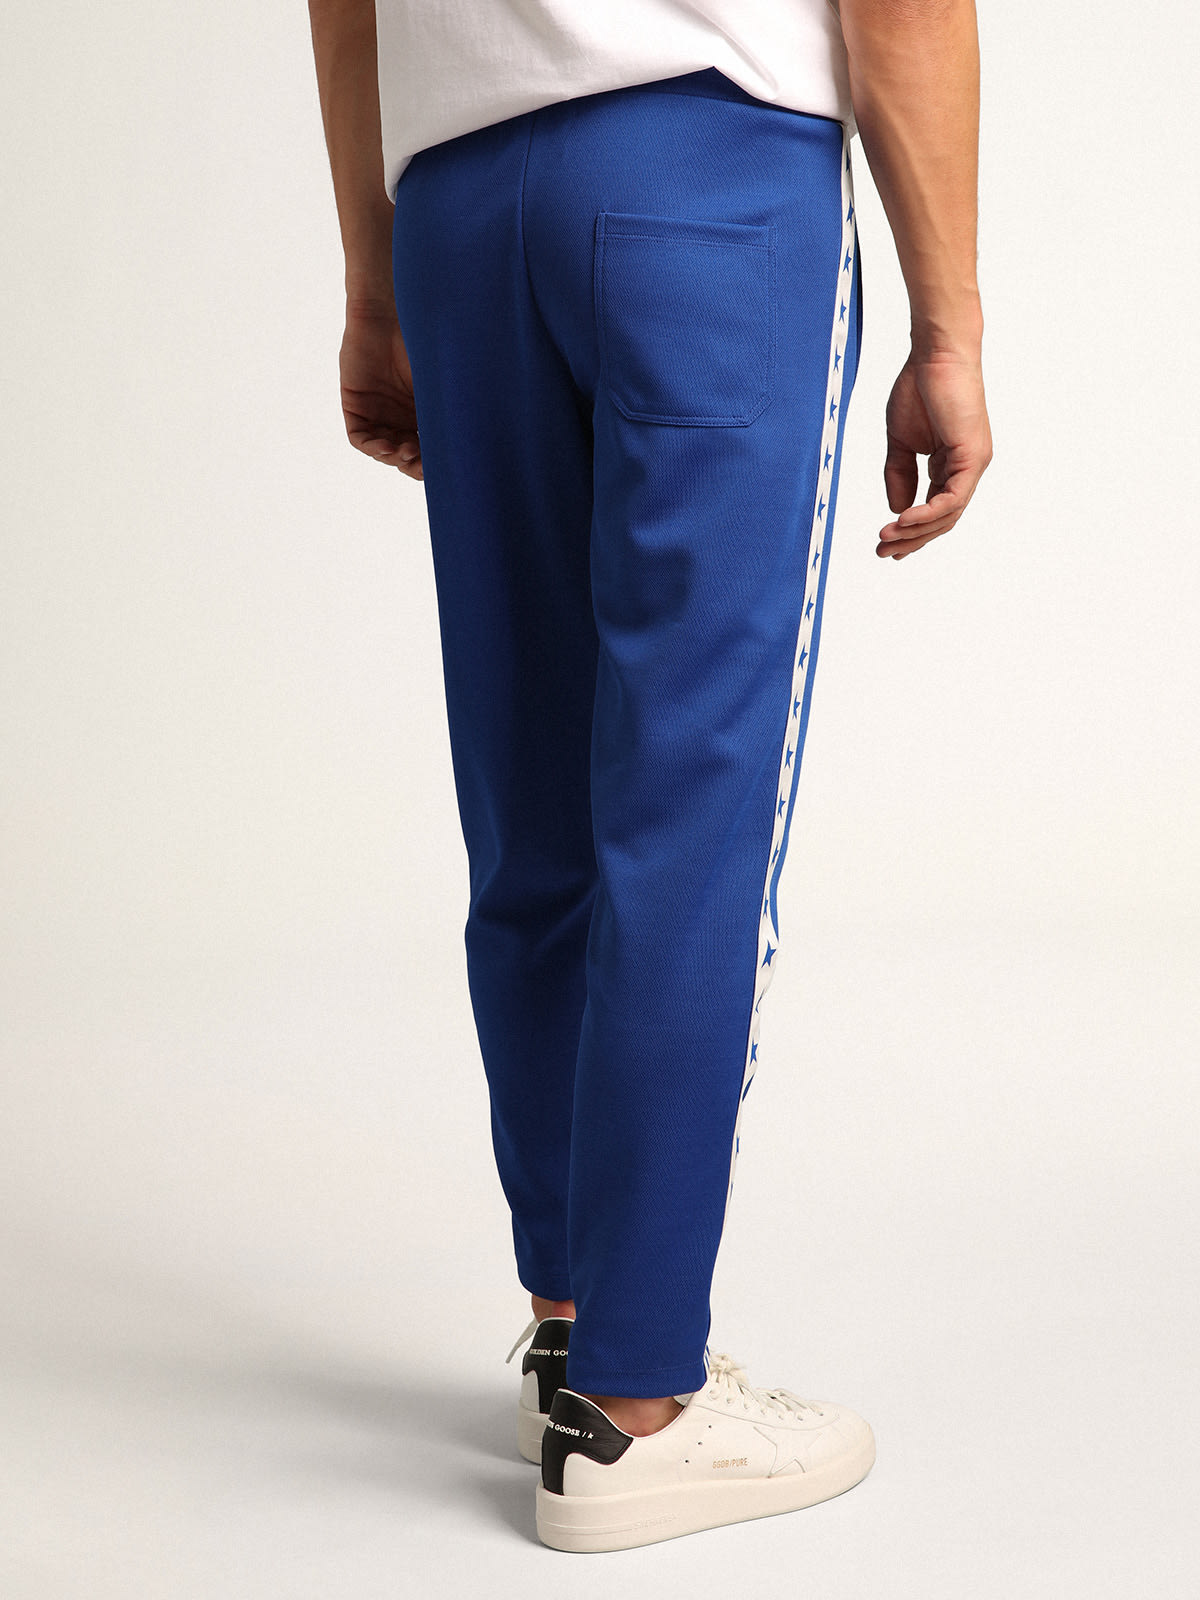 Golden Goose - Pantalon de jogging bleuet pour homme avec étoiles sur les côtés in 